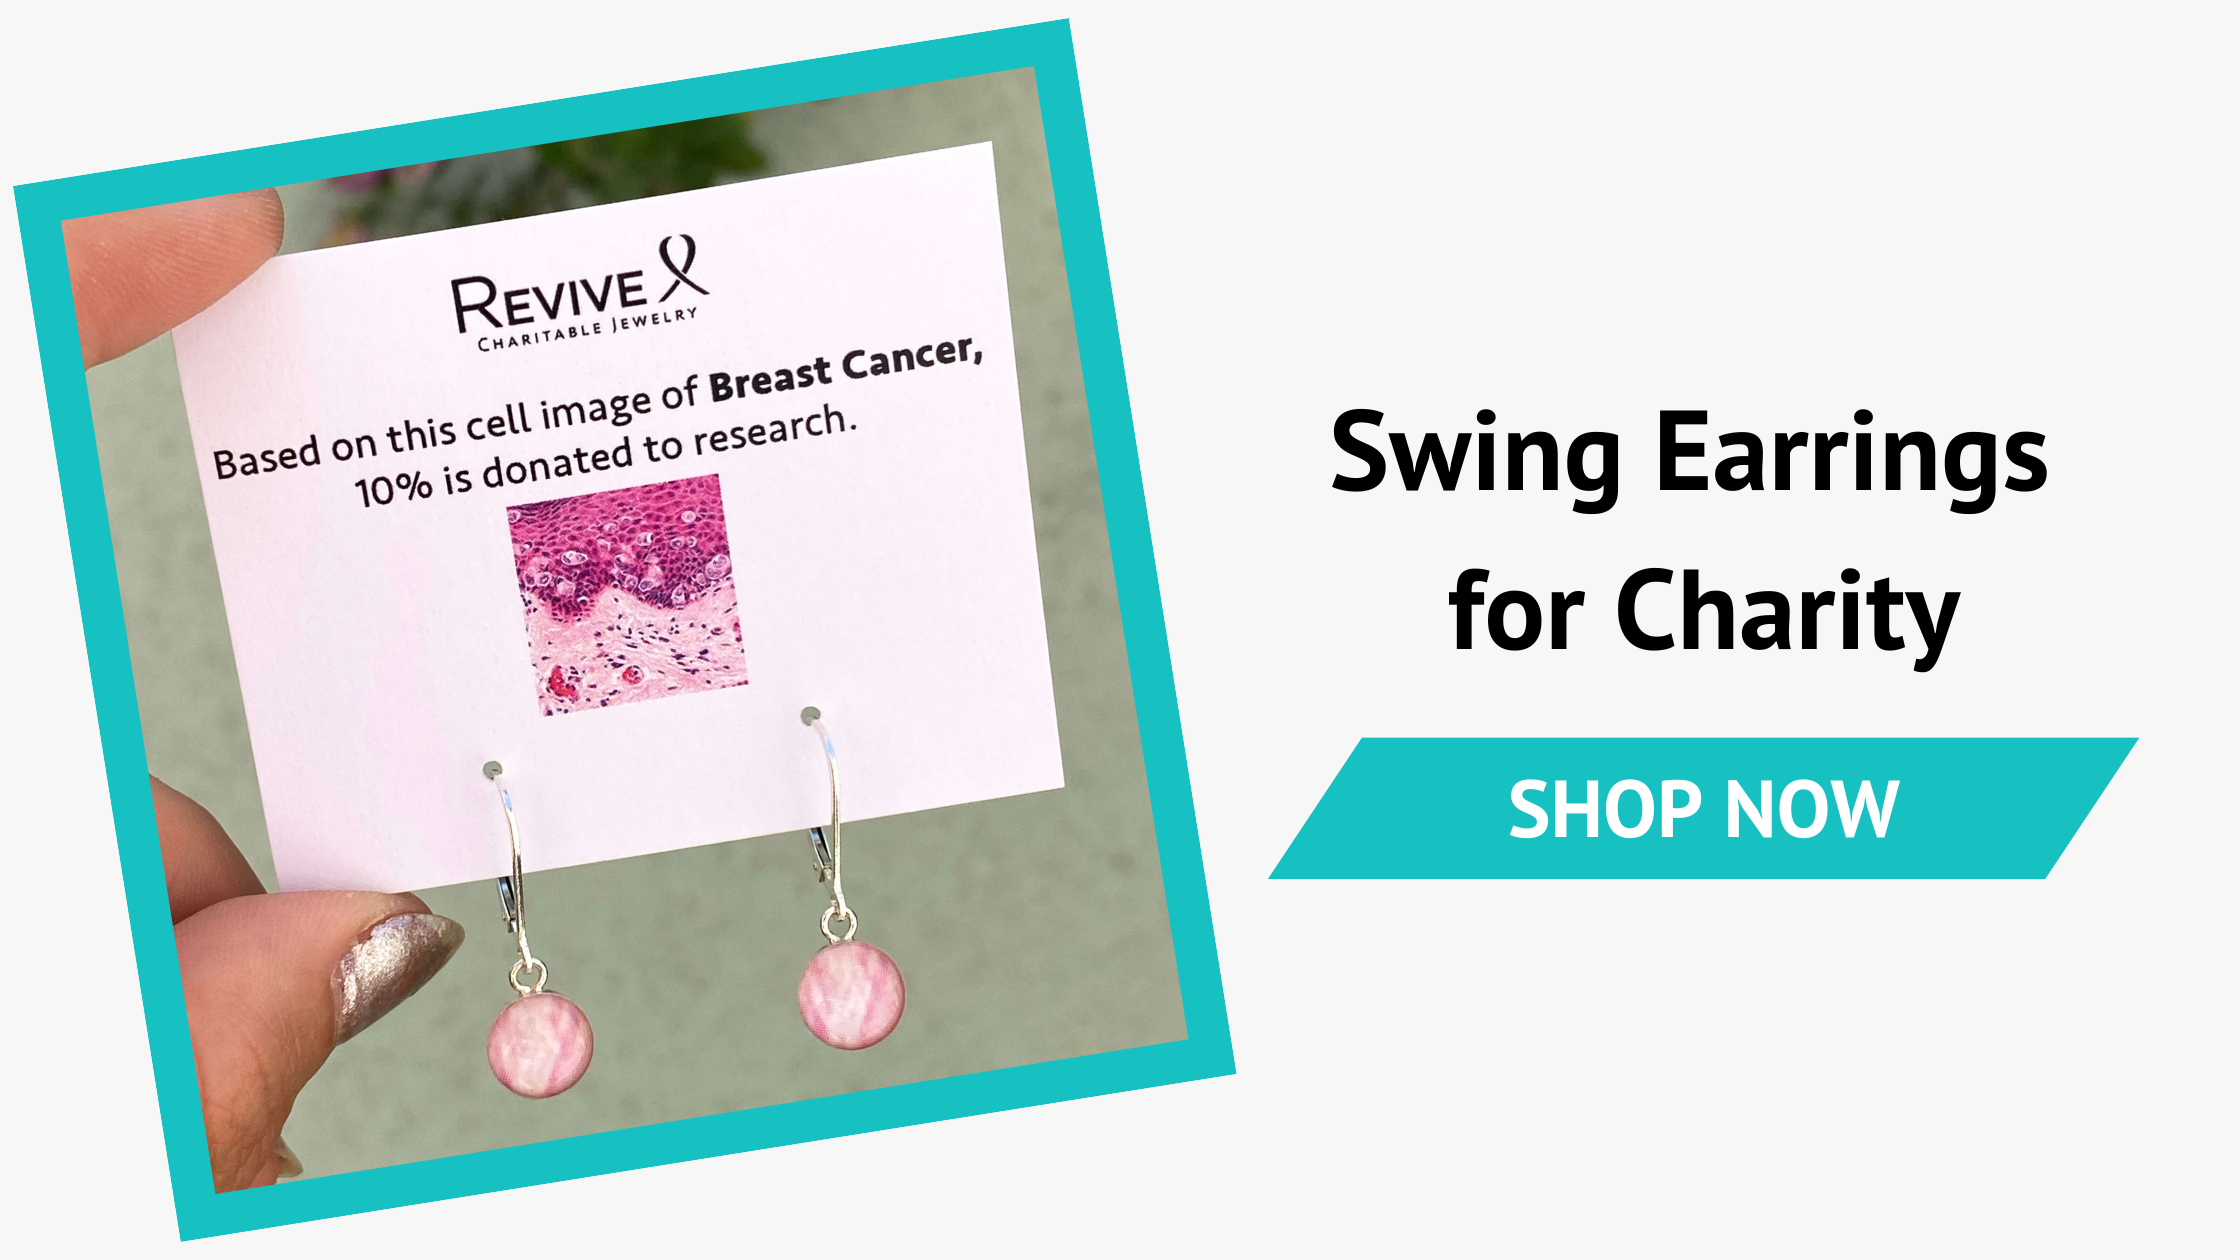 Swing Earrings for Charity